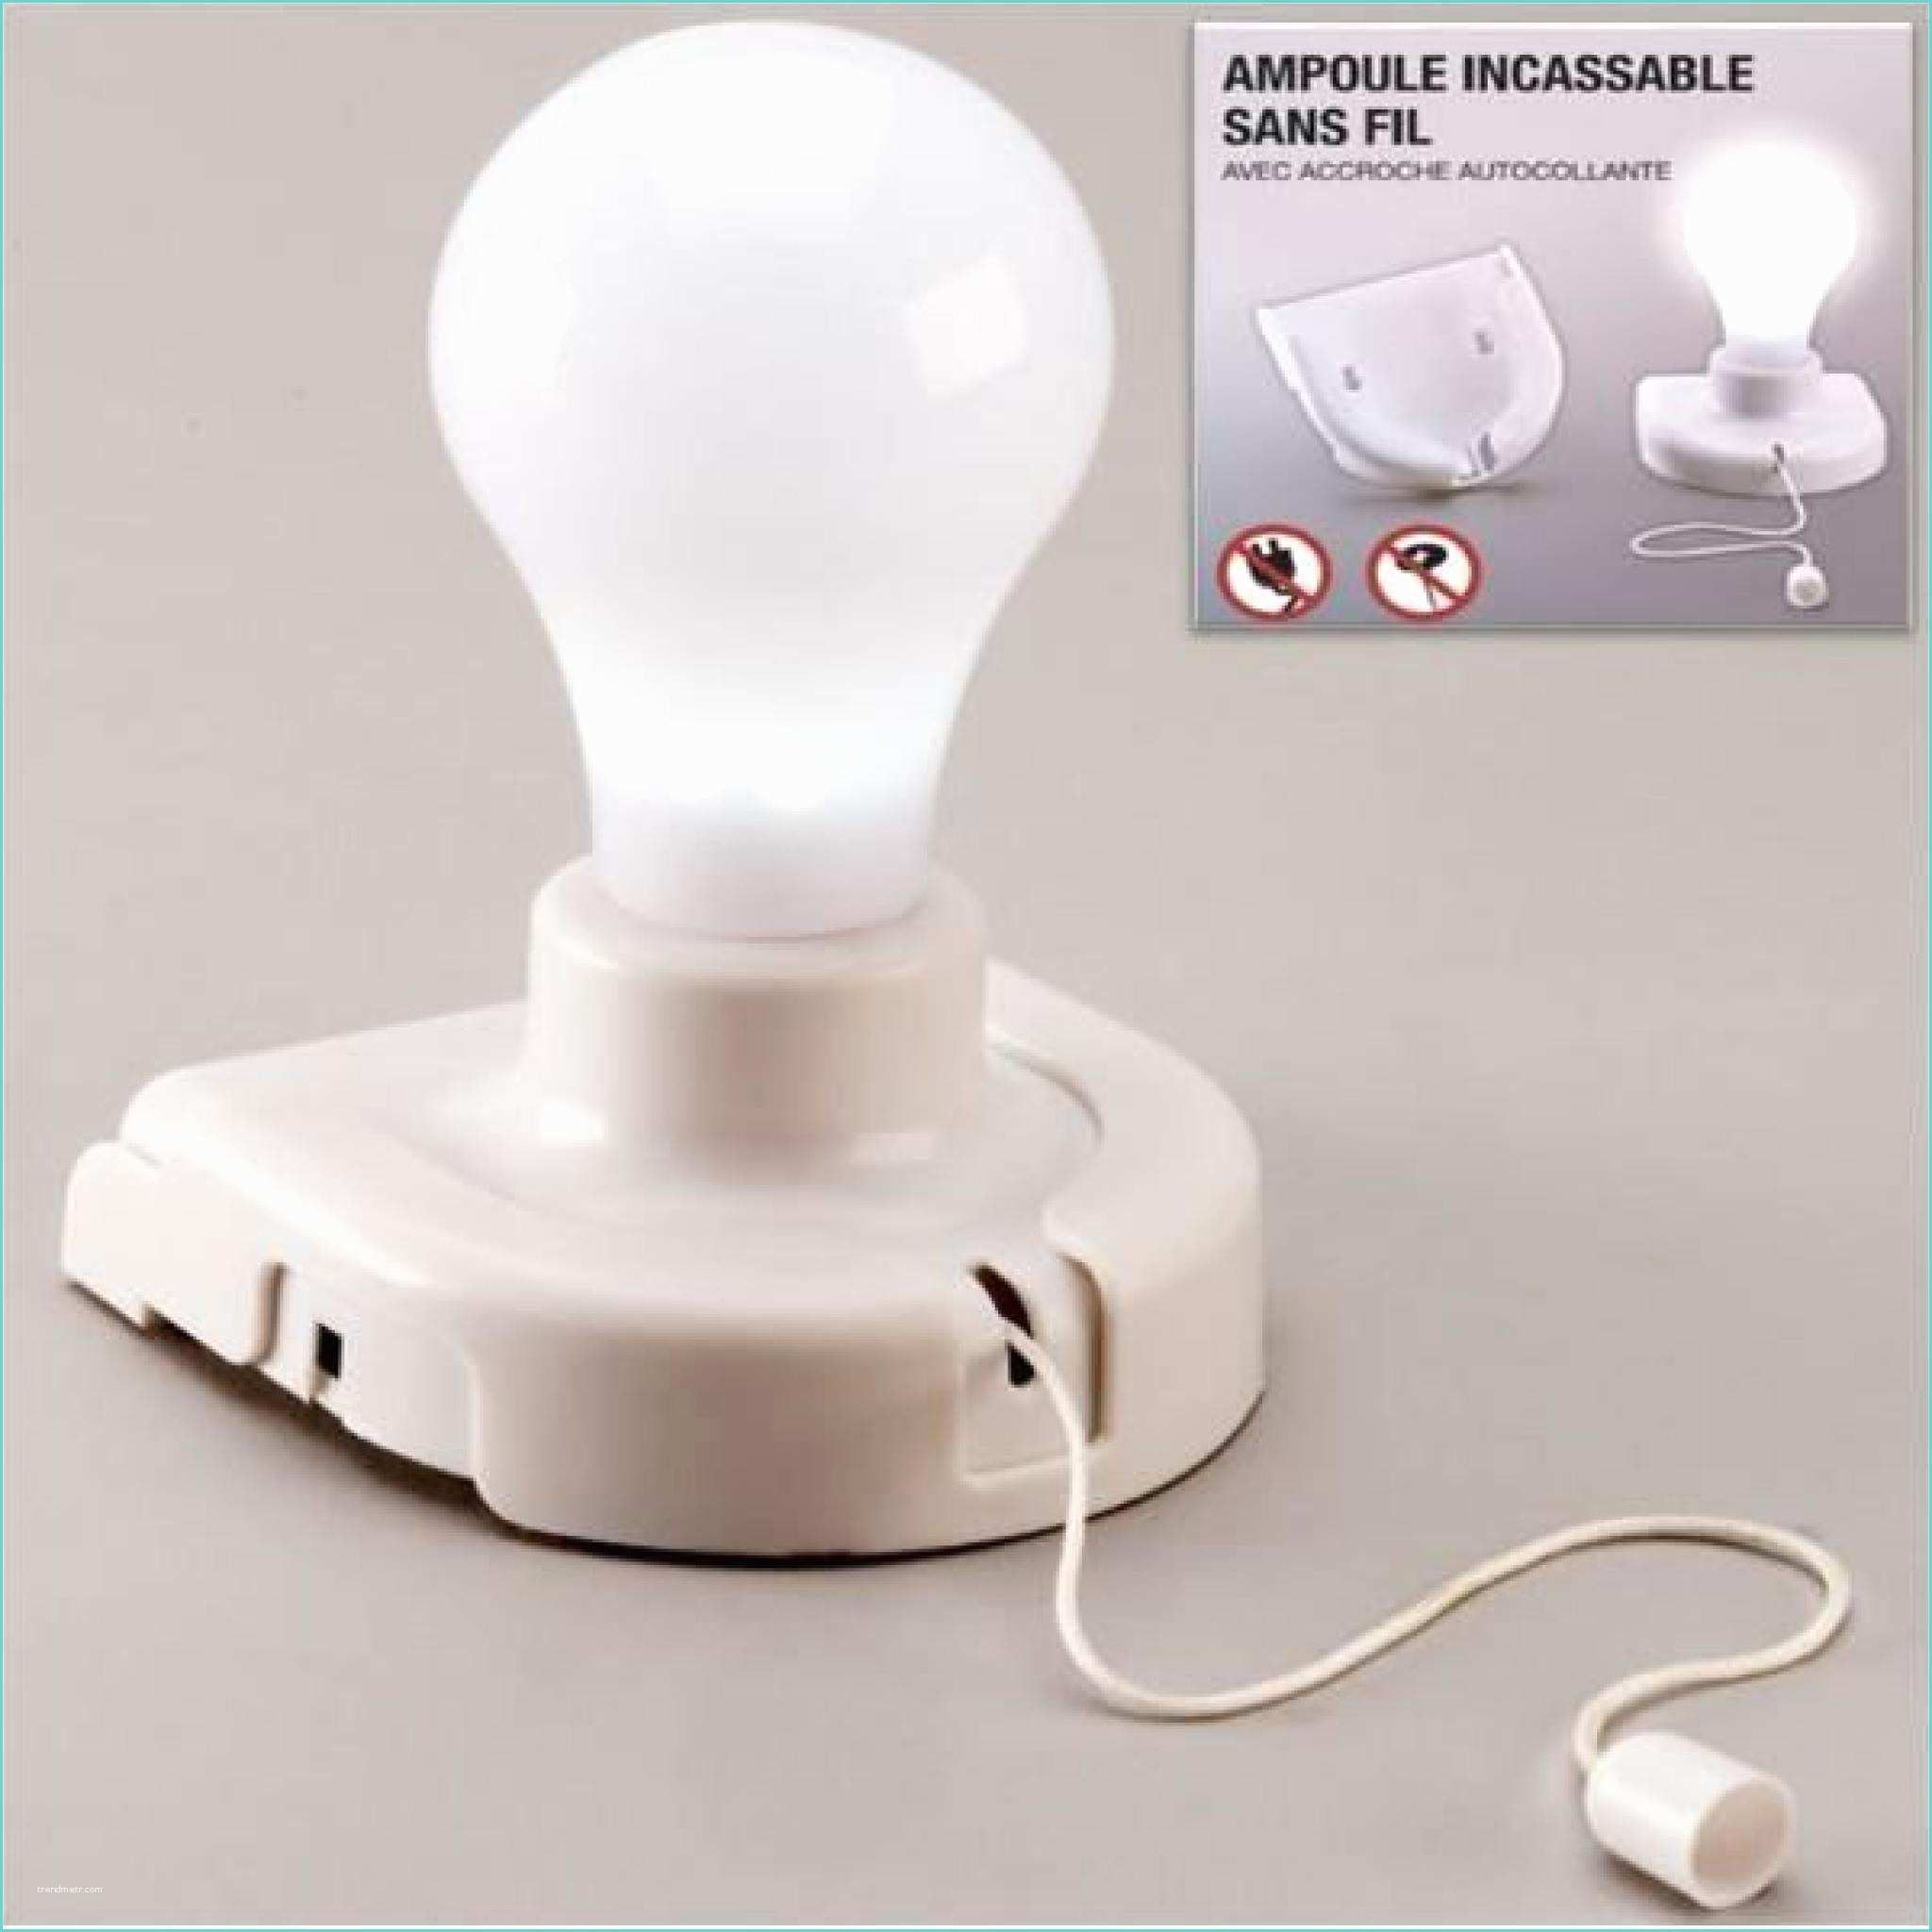 Lampe Pas Cher Lampe Ampoule Sans Fil Incassable Portable Autocollante